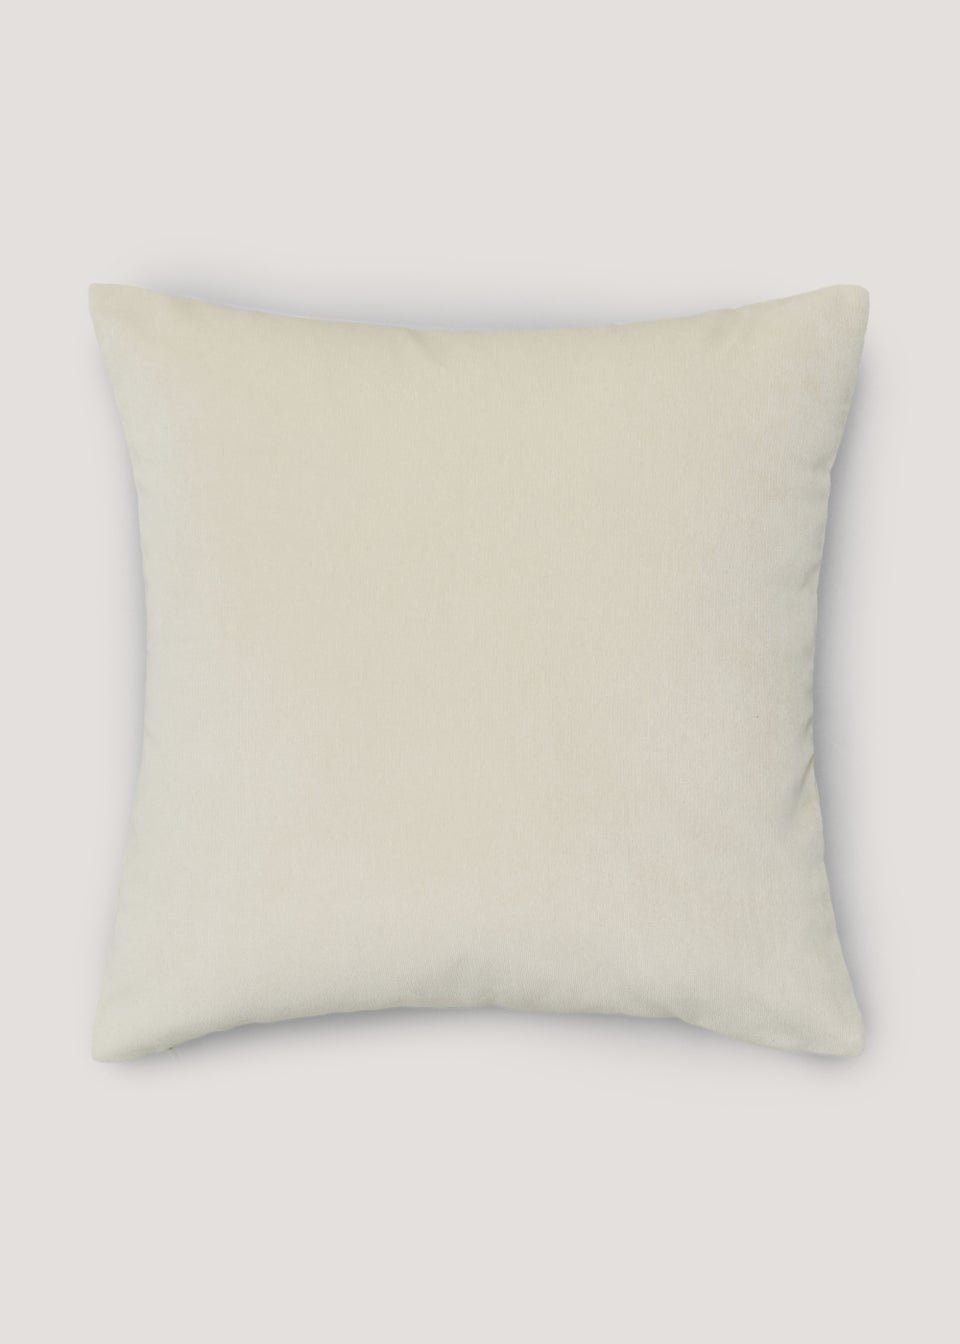 Cream Soft Velour Cushion (43cm x 43cm)